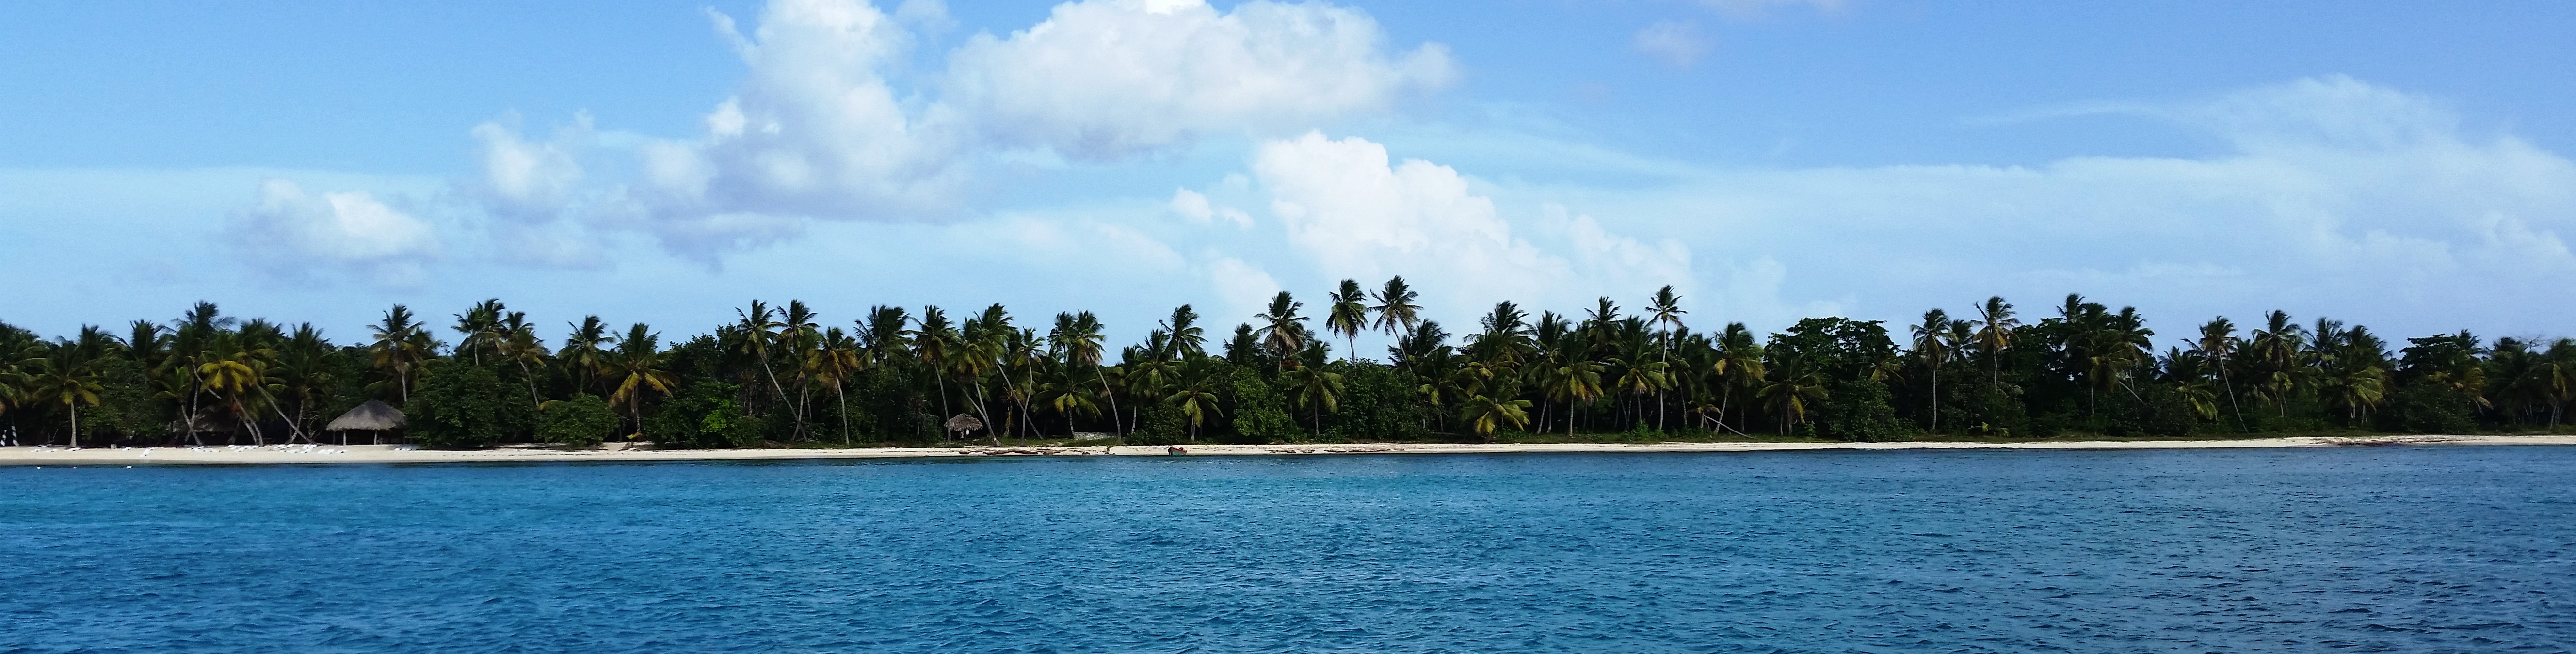 The palm tree lined beach at Isla Saona